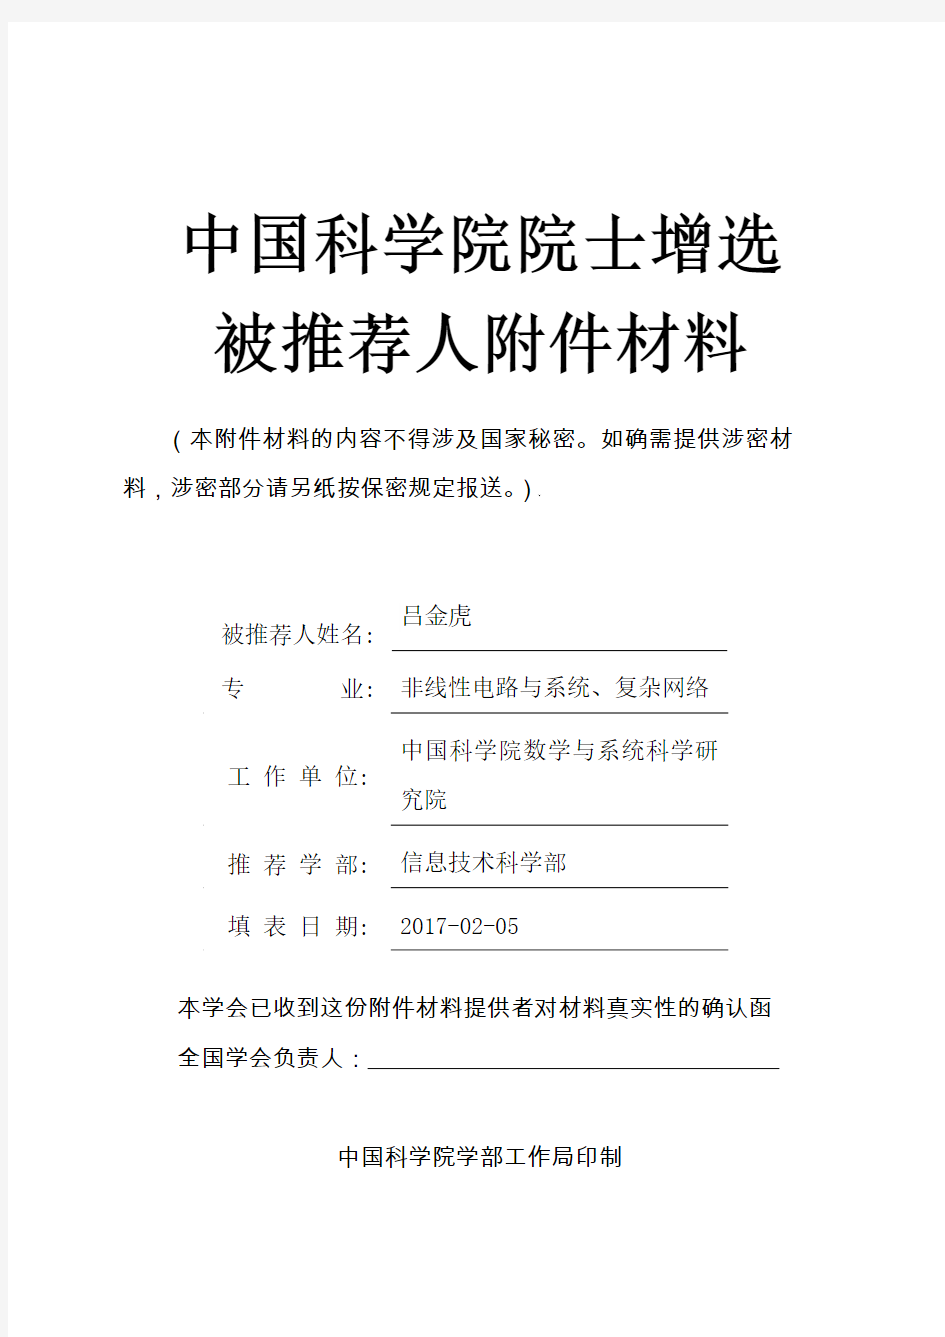 中国科学院院士增选被推荐人材料-中国运筹学会